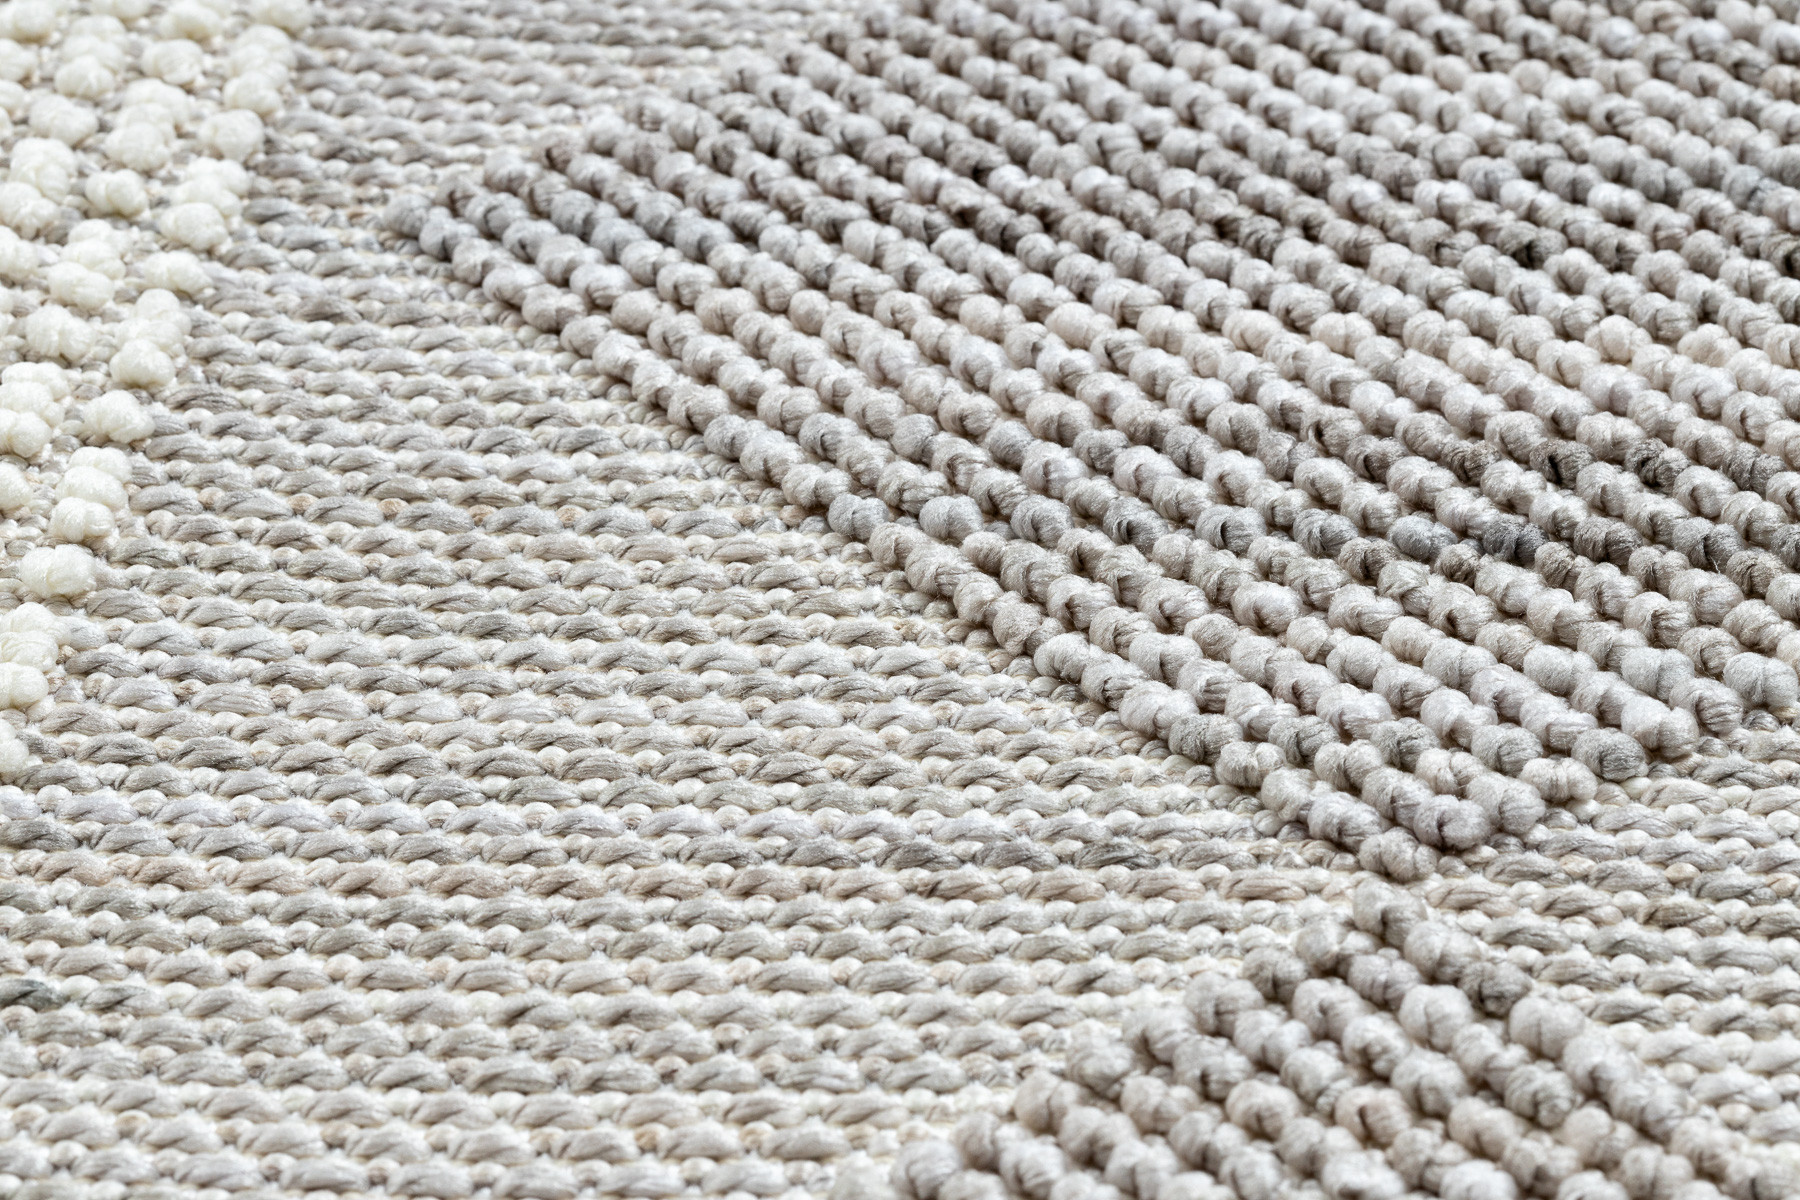 Šnúrkový koberec NANO EO61A Romby sivo - biely